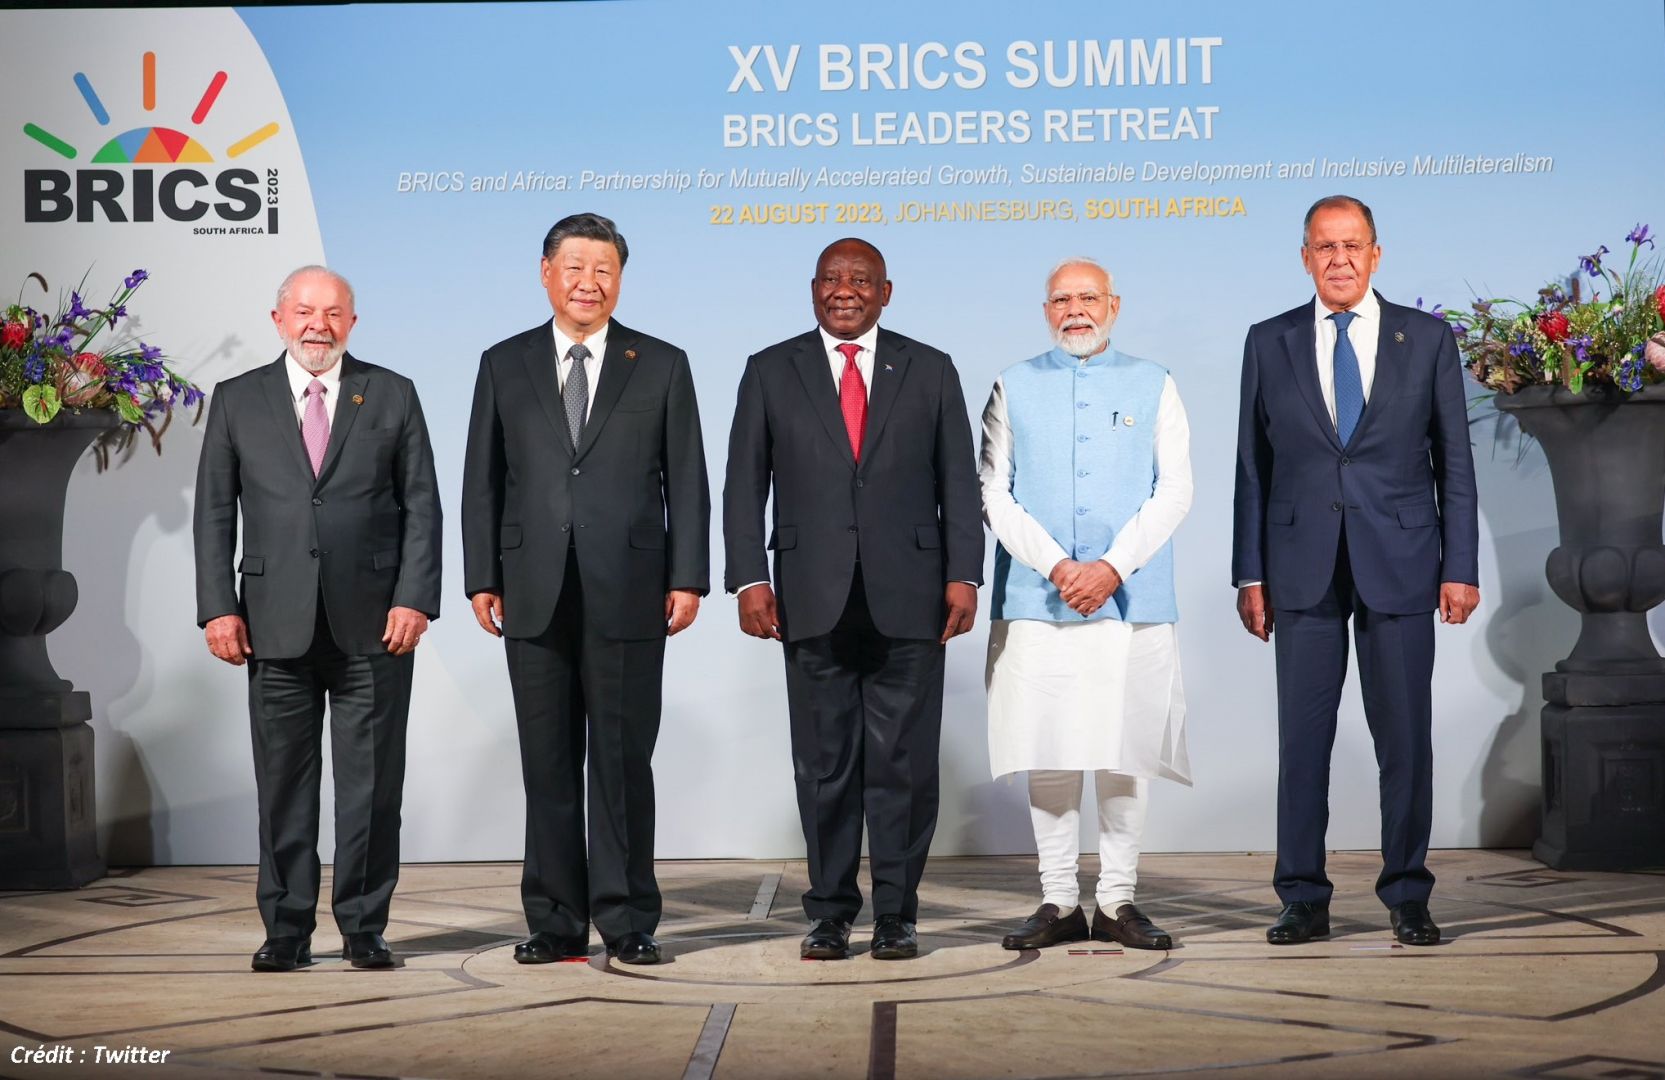 L'INDE "SOUTIENT PLEINEMENT" L'EXPANSION DES BRICS